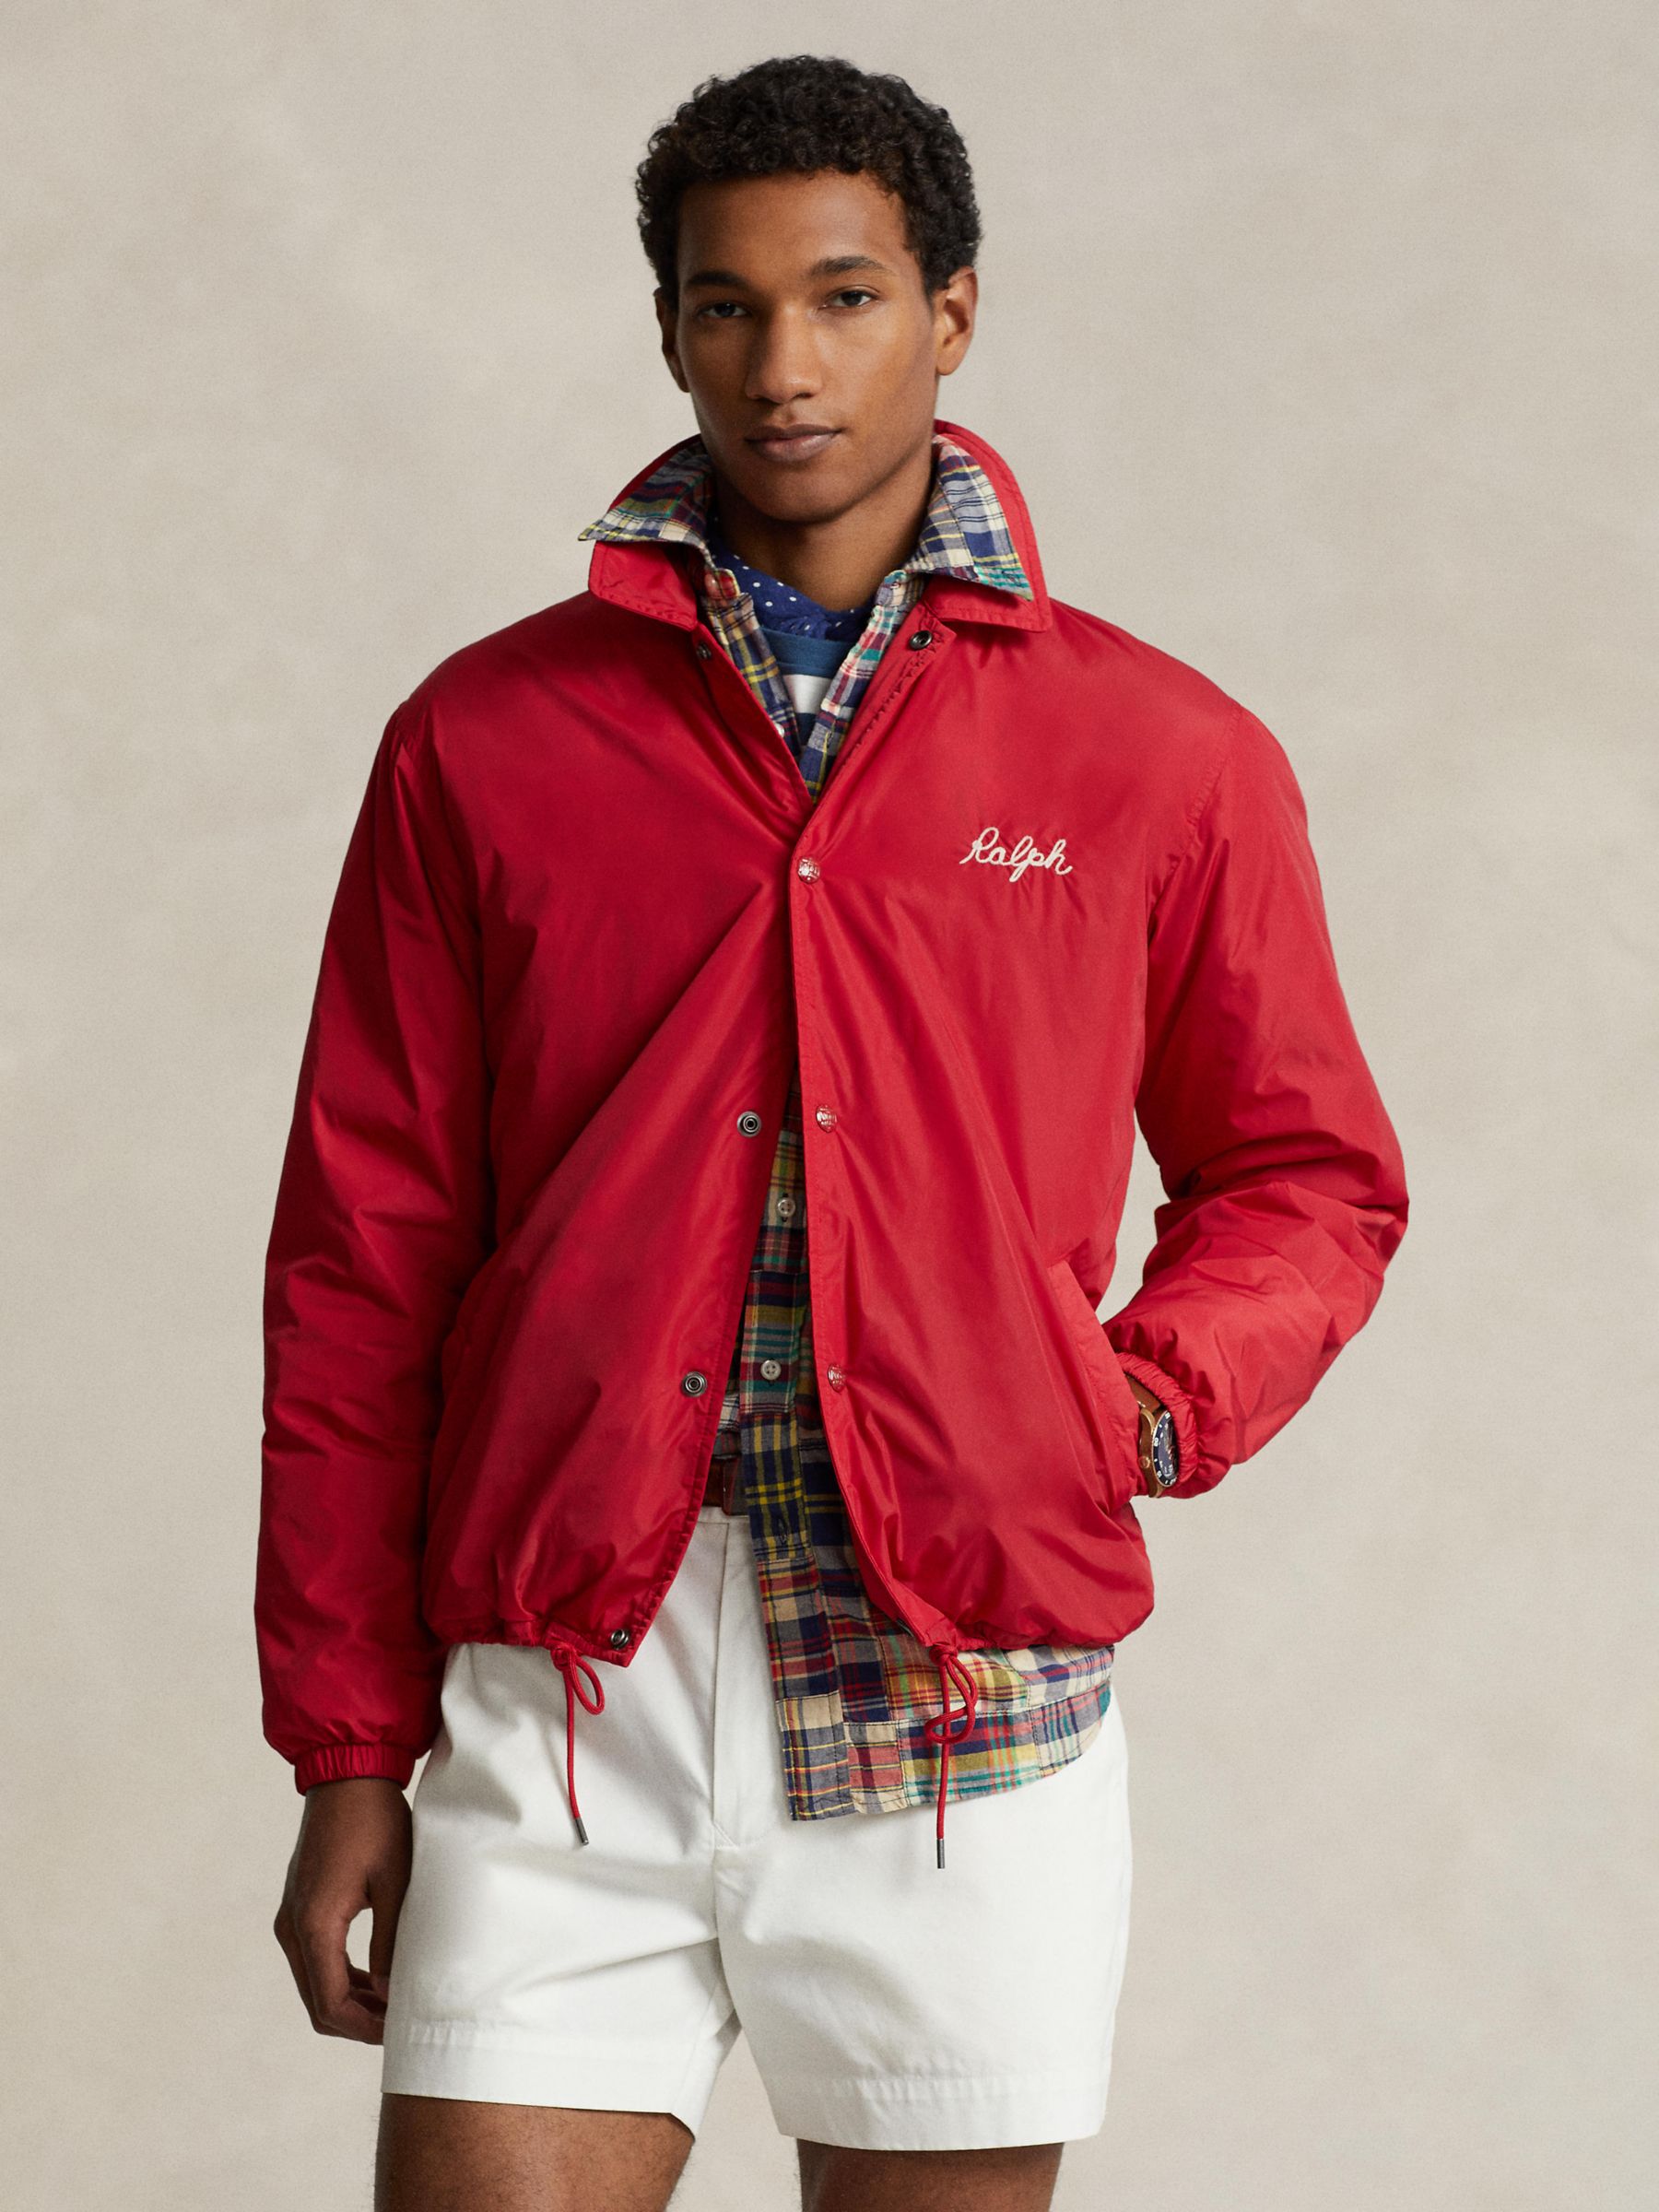 Men's Coats & Jackets - Ralph Lauren, Jackets